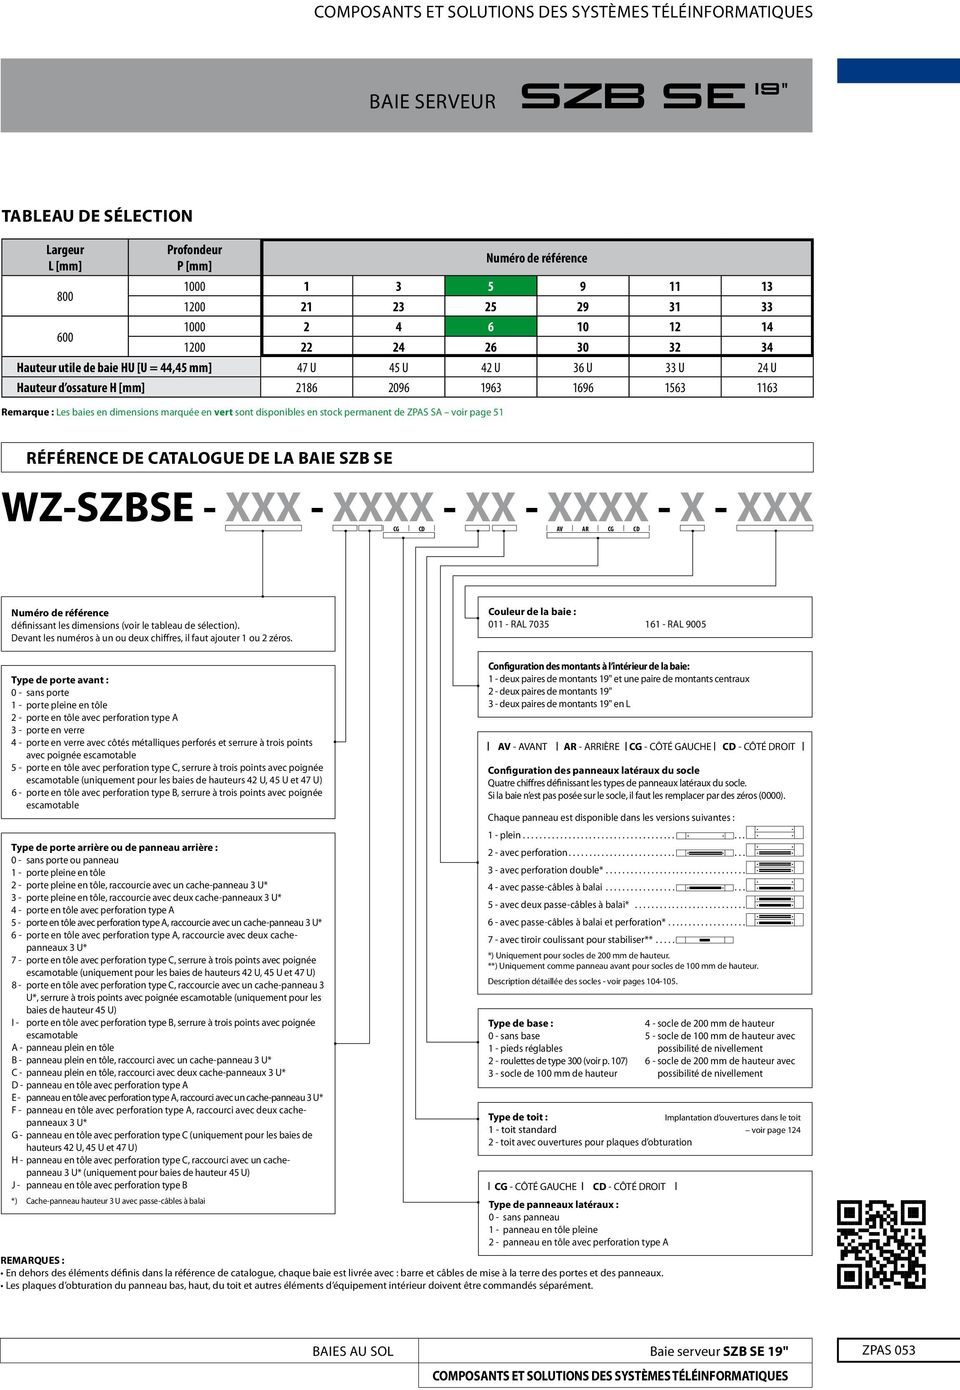 LA BAIE SZB SE WZ-SZBSE - XXX - XXXX - XX - XXXX - X - XXX AV AR CG CD CG CD Numéro de référence définissant les dimensions (voir le tableau de sélection).